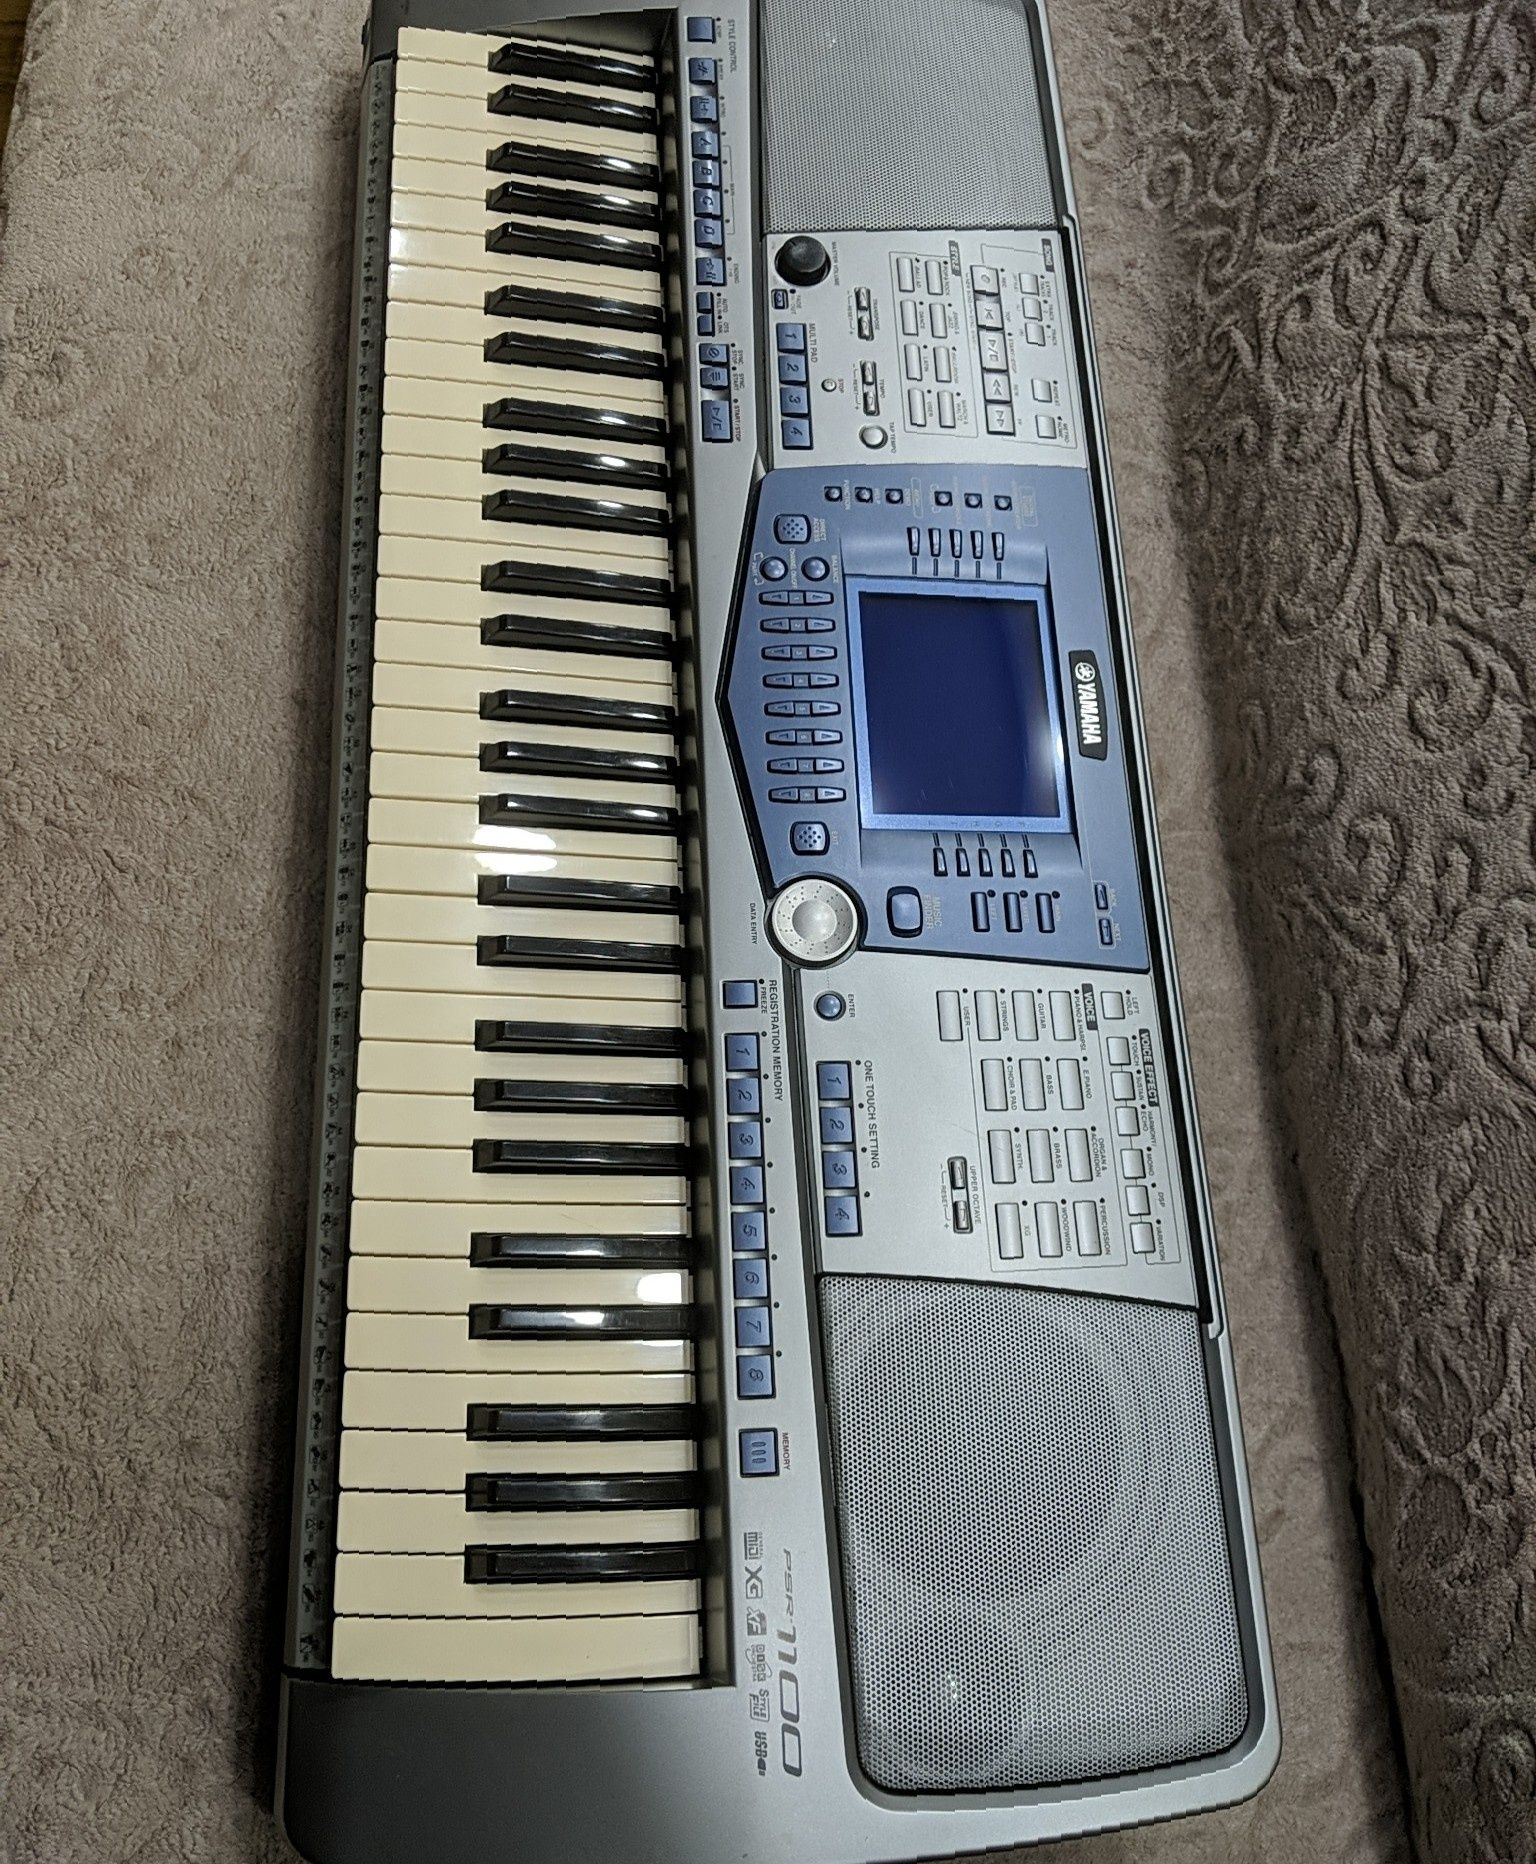 Yamaha psr 1100, синтезатор, клавиша.